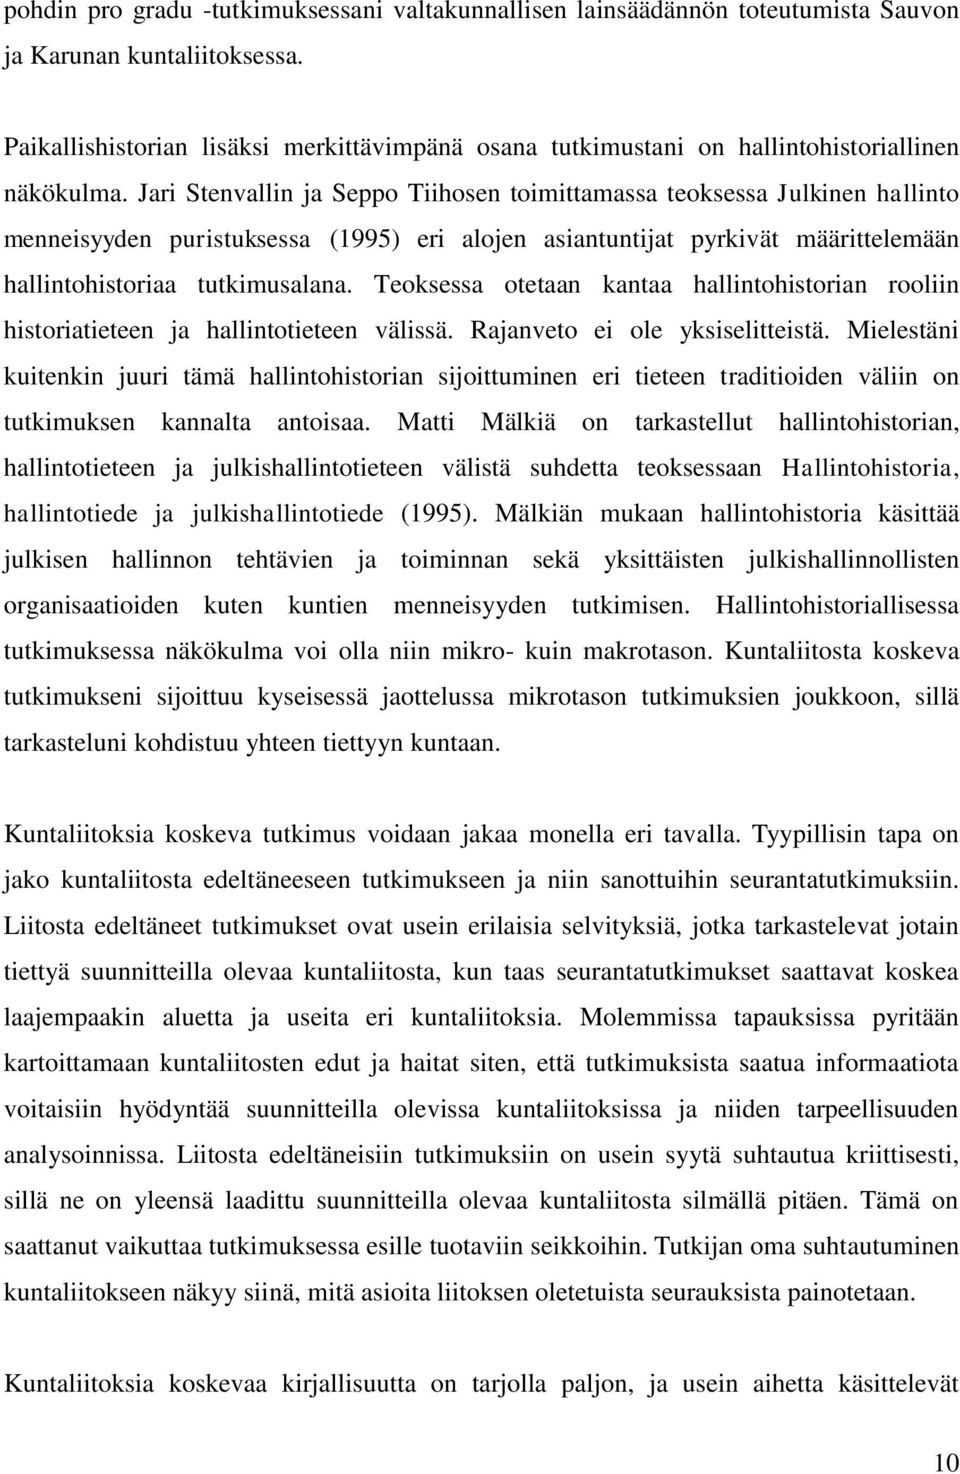 Jari Stenvallin ja Seppo Tiihosen toimittamassa teoksessa Julkinen hallinto menneisyyden puristuksessa (1995) eri alojen asiantuntijat pyrkivät määrittelemään hallintohistoriaa tutkimusalana.